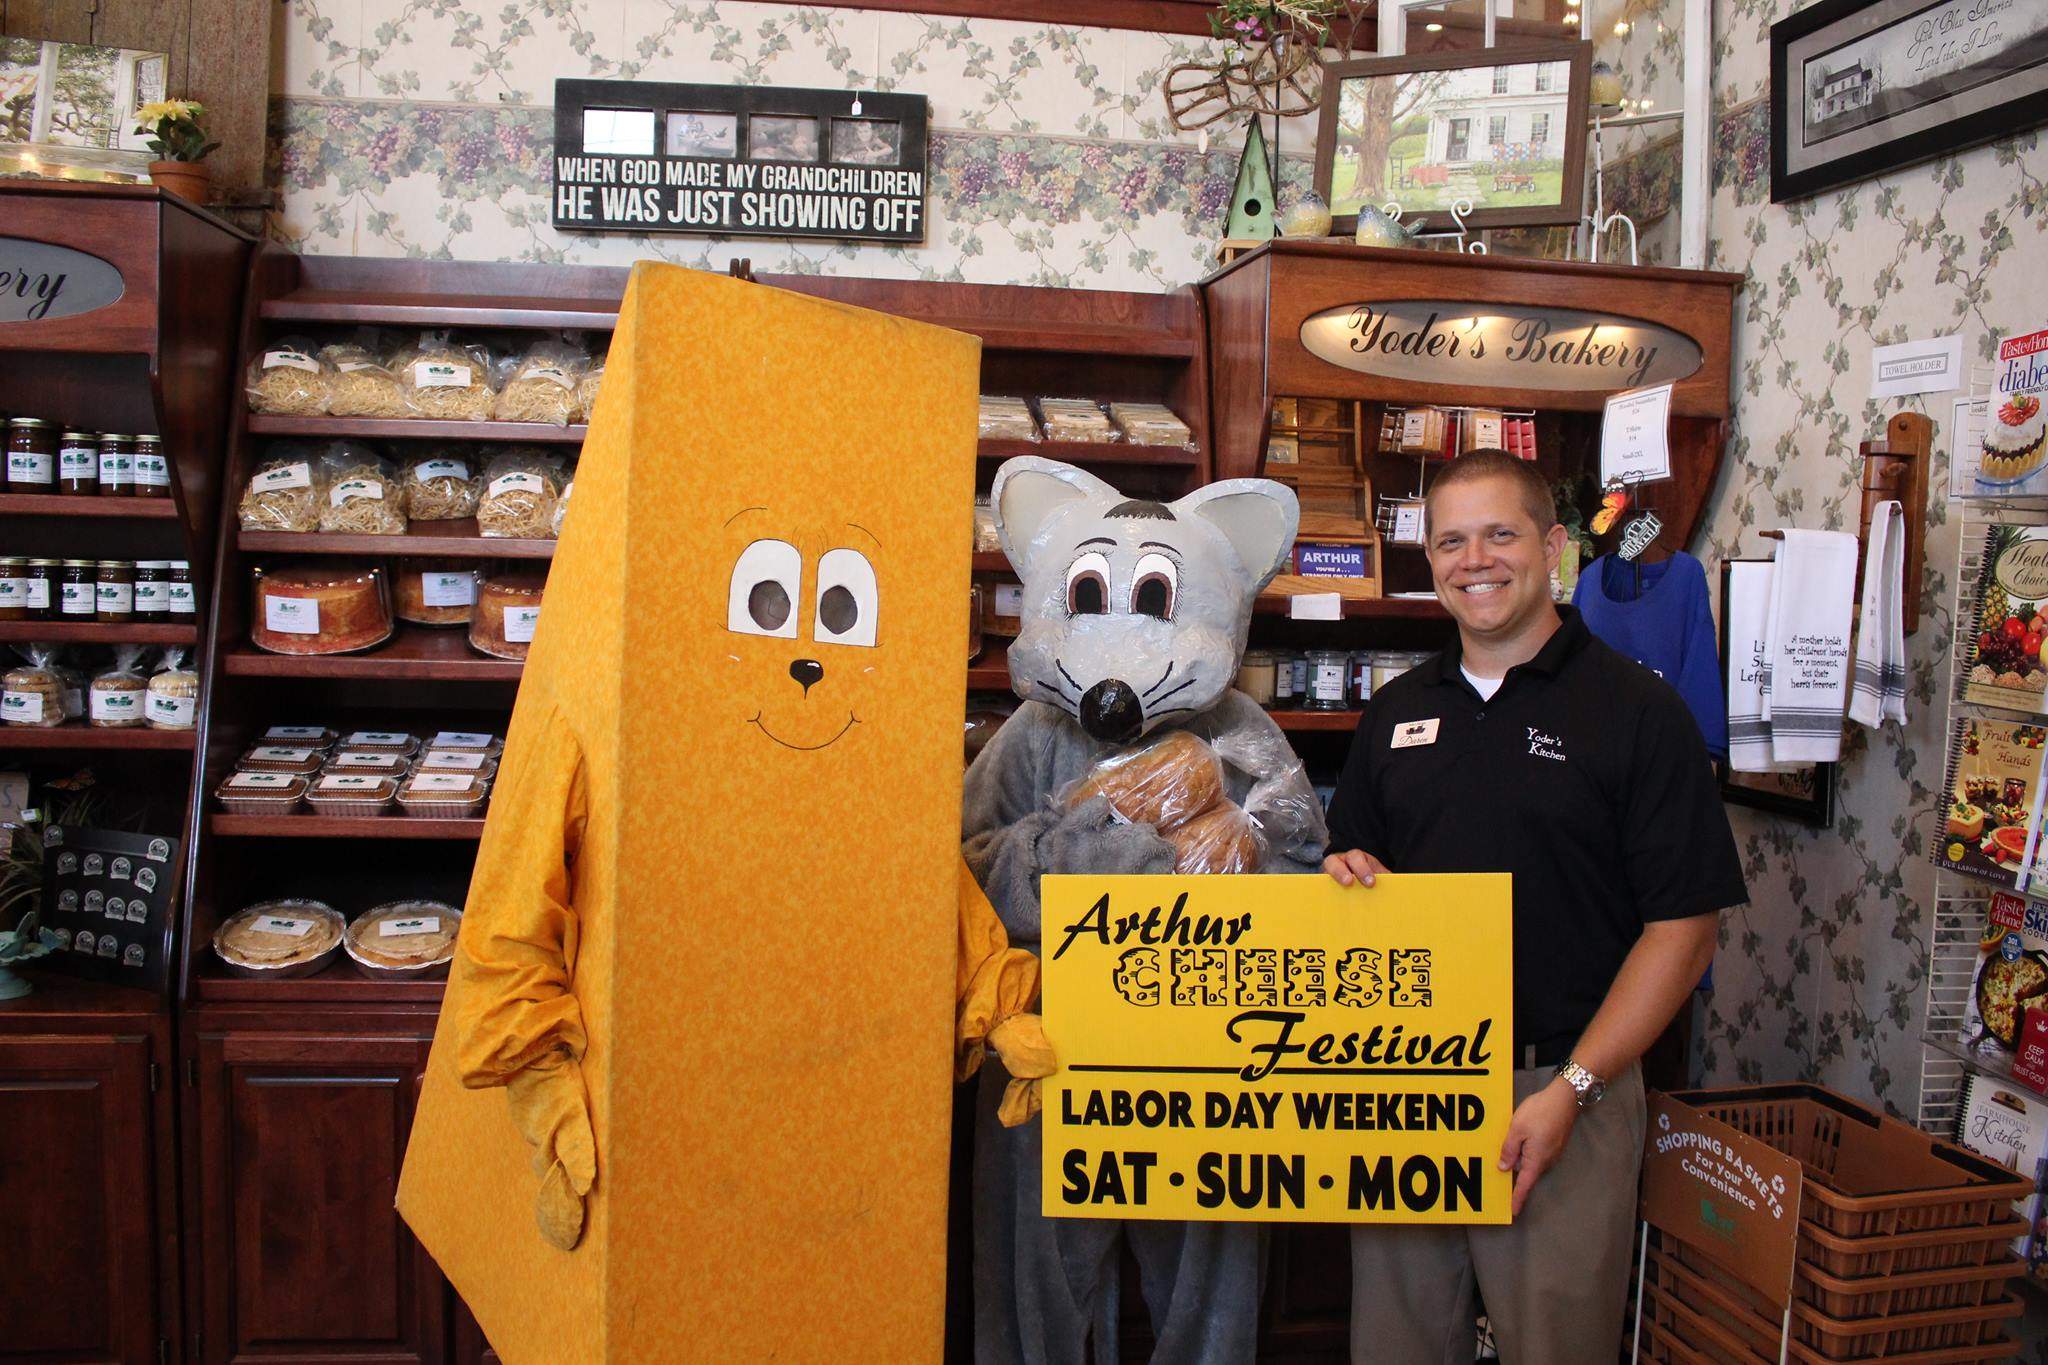 Mascottes en costume de fromage et en costume de souris à côté d'un homme tenant un panneau du festival Arthur Cheese.